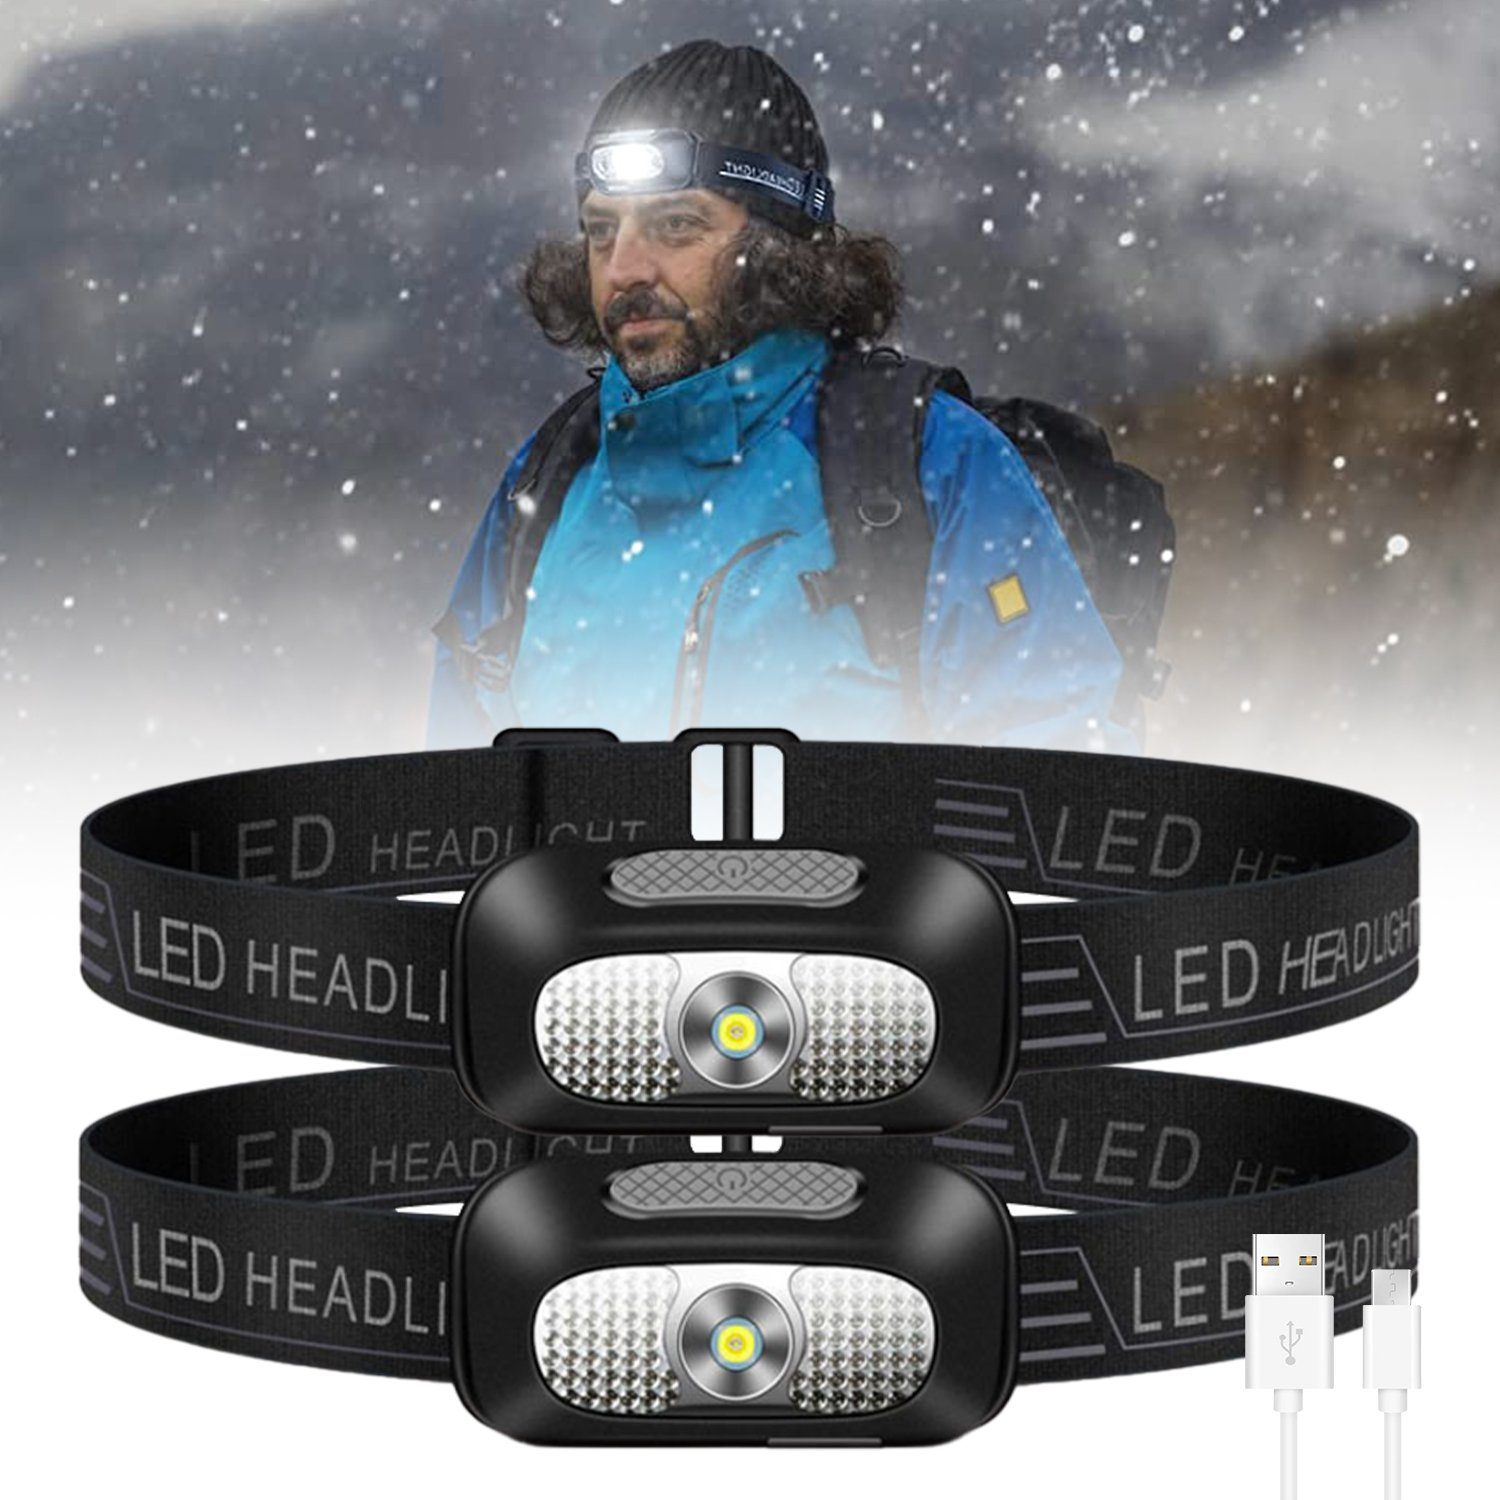 LED für Laufen, Abenteuer Kopflampe Wiederaufladbar, einstellbar Kpaloft Lichtwinkel Set Camping, Stirnlampe USB Wasserfest, 2er 5 60° Modi,